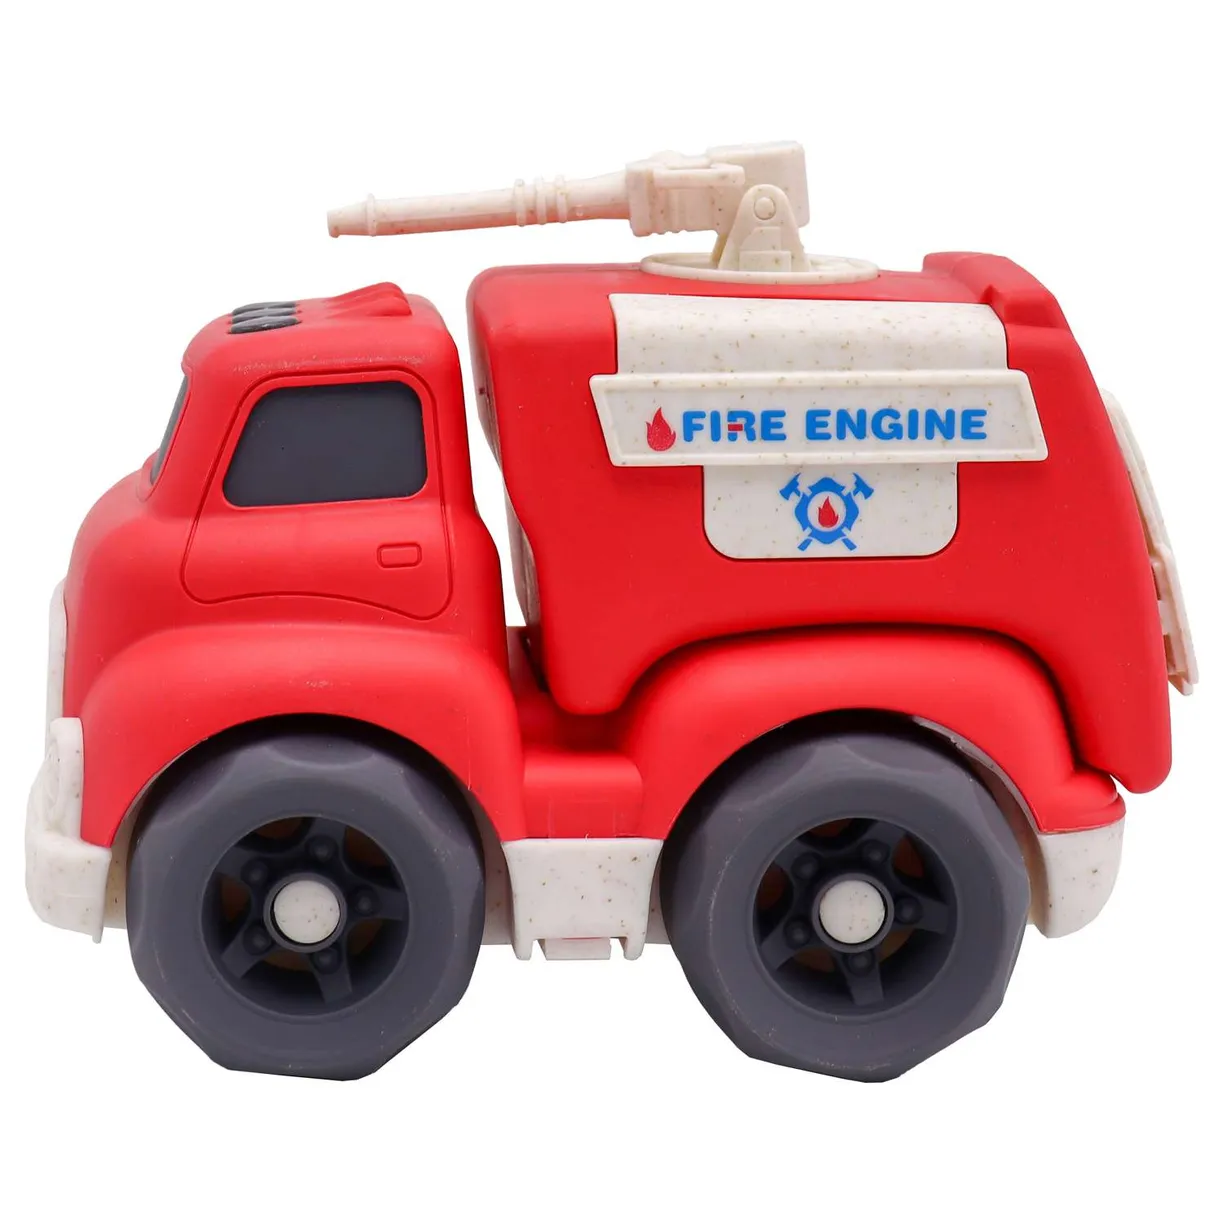 Пожарная эко-машинка - фото